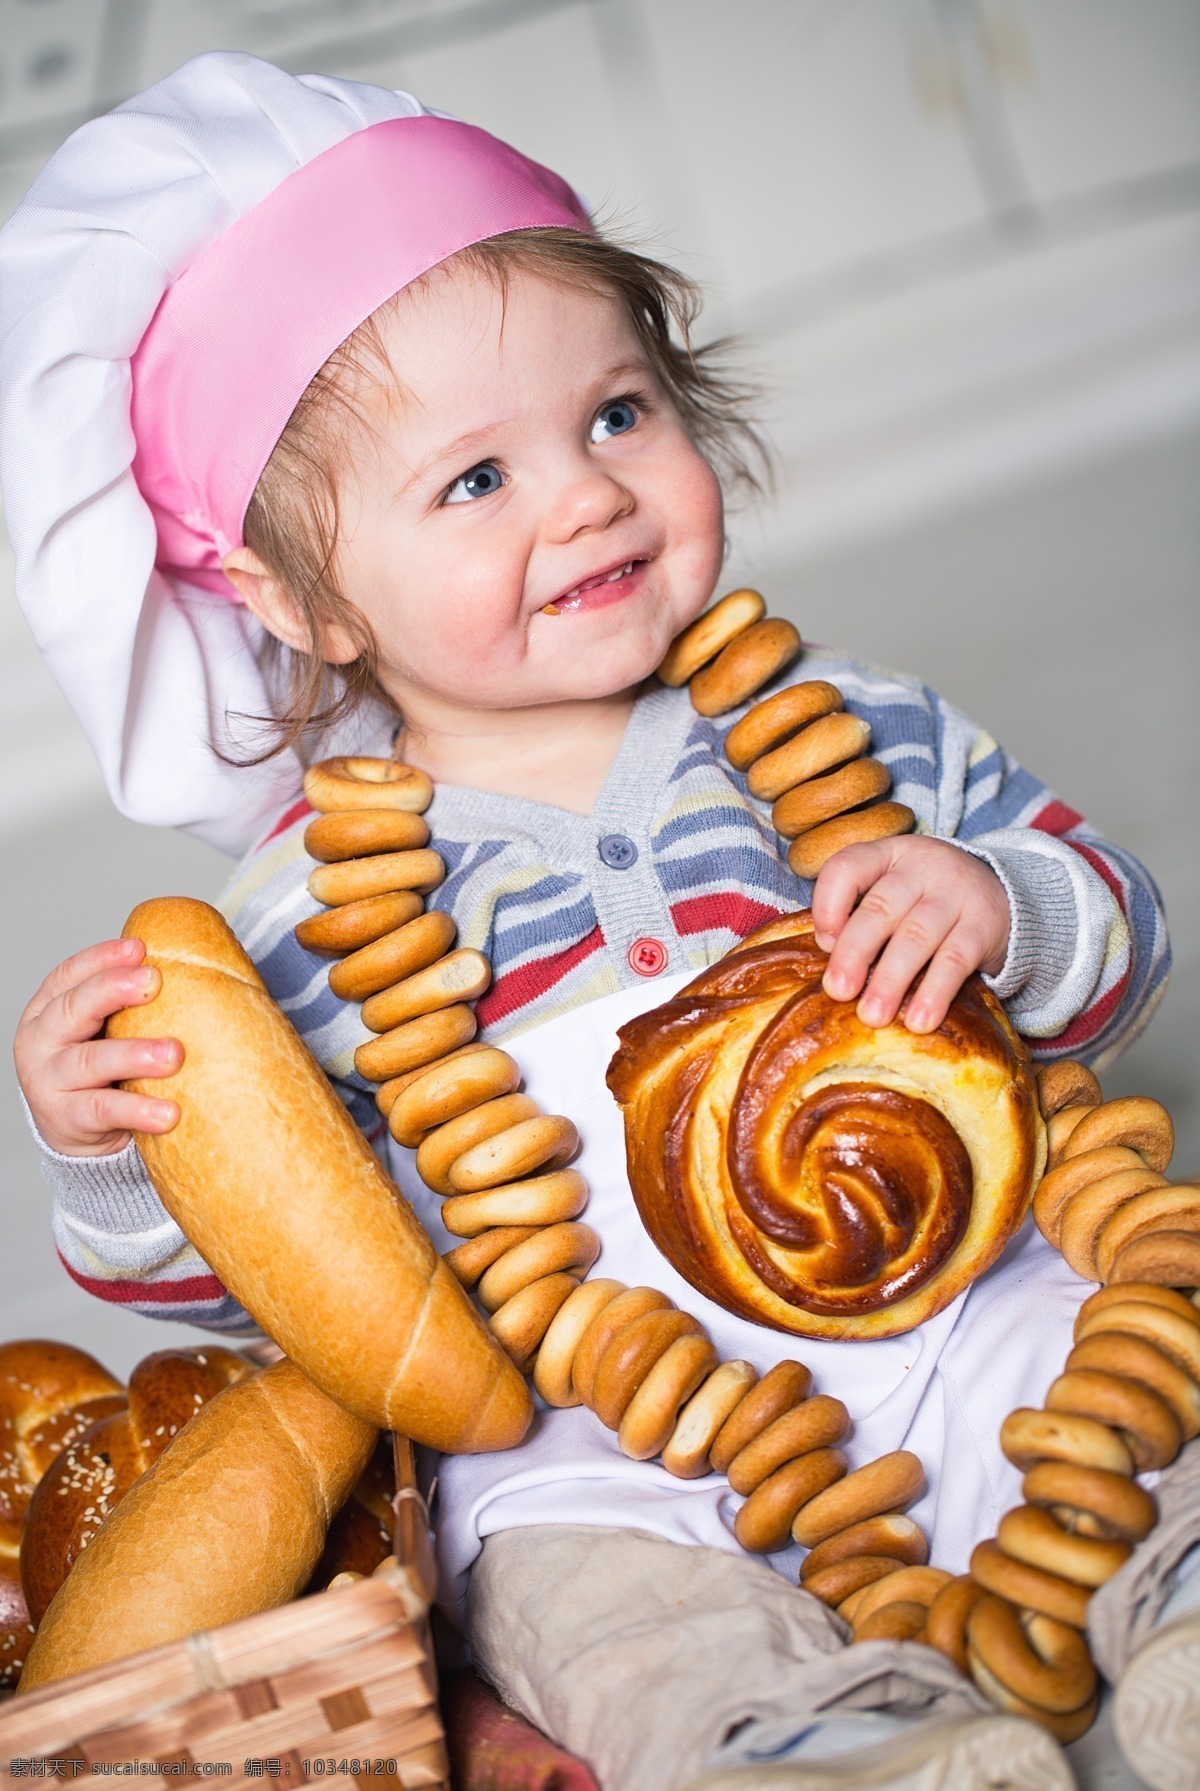 面包 孩子 食物 美食 微笑 儿童 儿童图片 人物图片